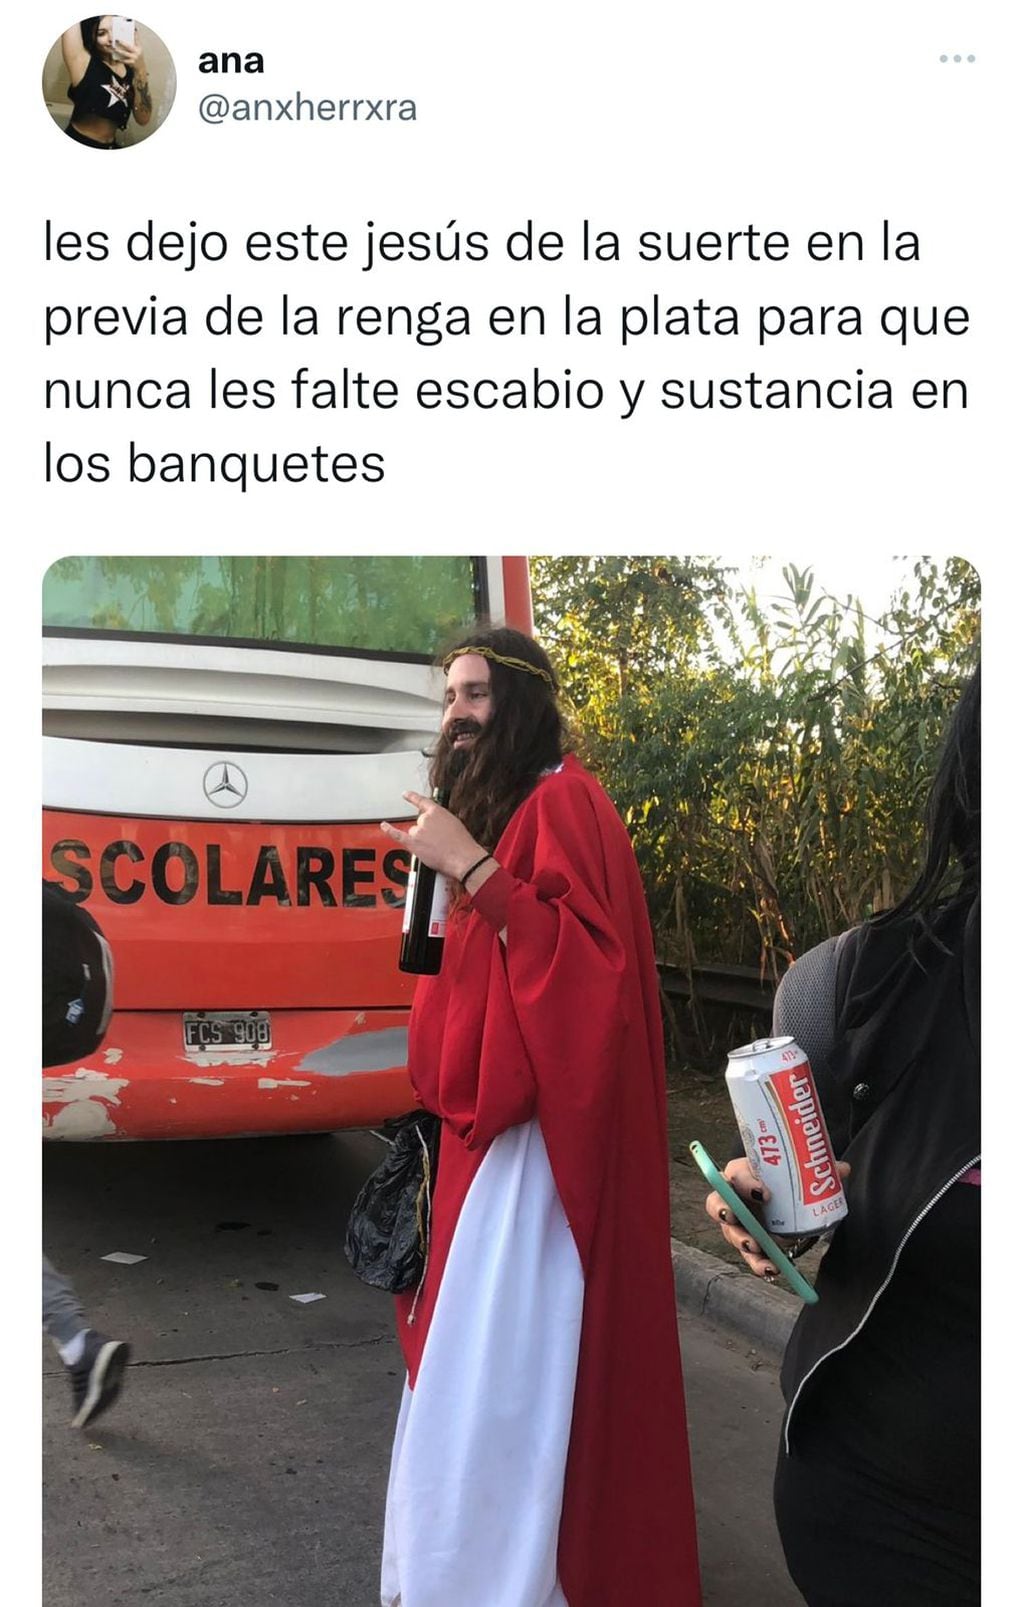 Con vino en mano, un hombre disfrazado de "Jesús" cantó en el show de La Renga en La Plata.